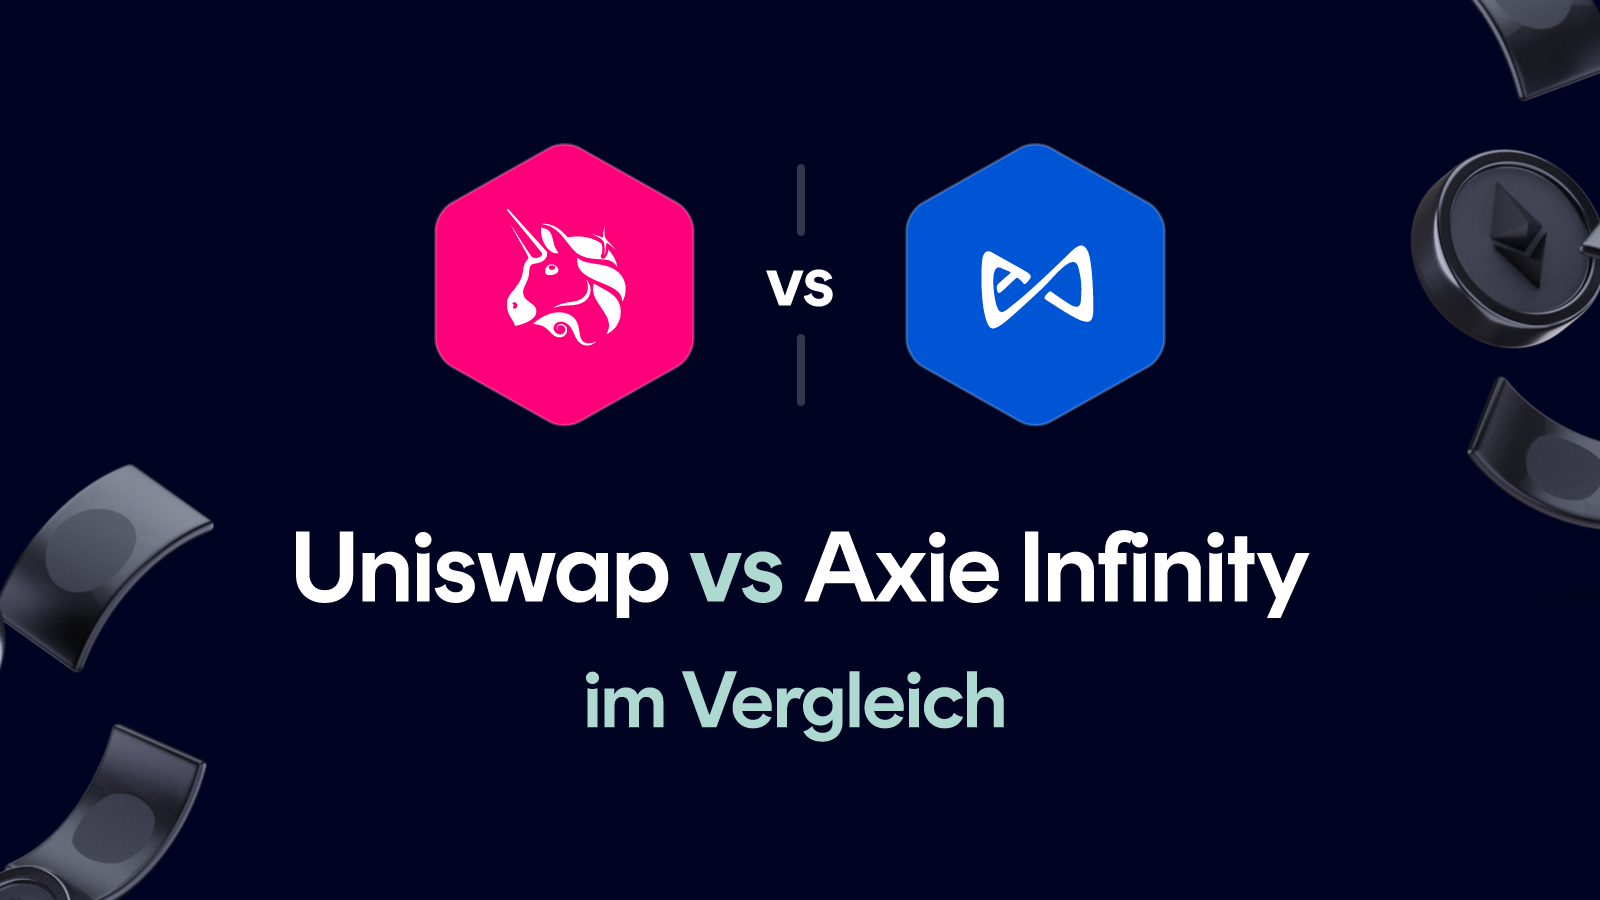 Uniswap vs Axie Infinity